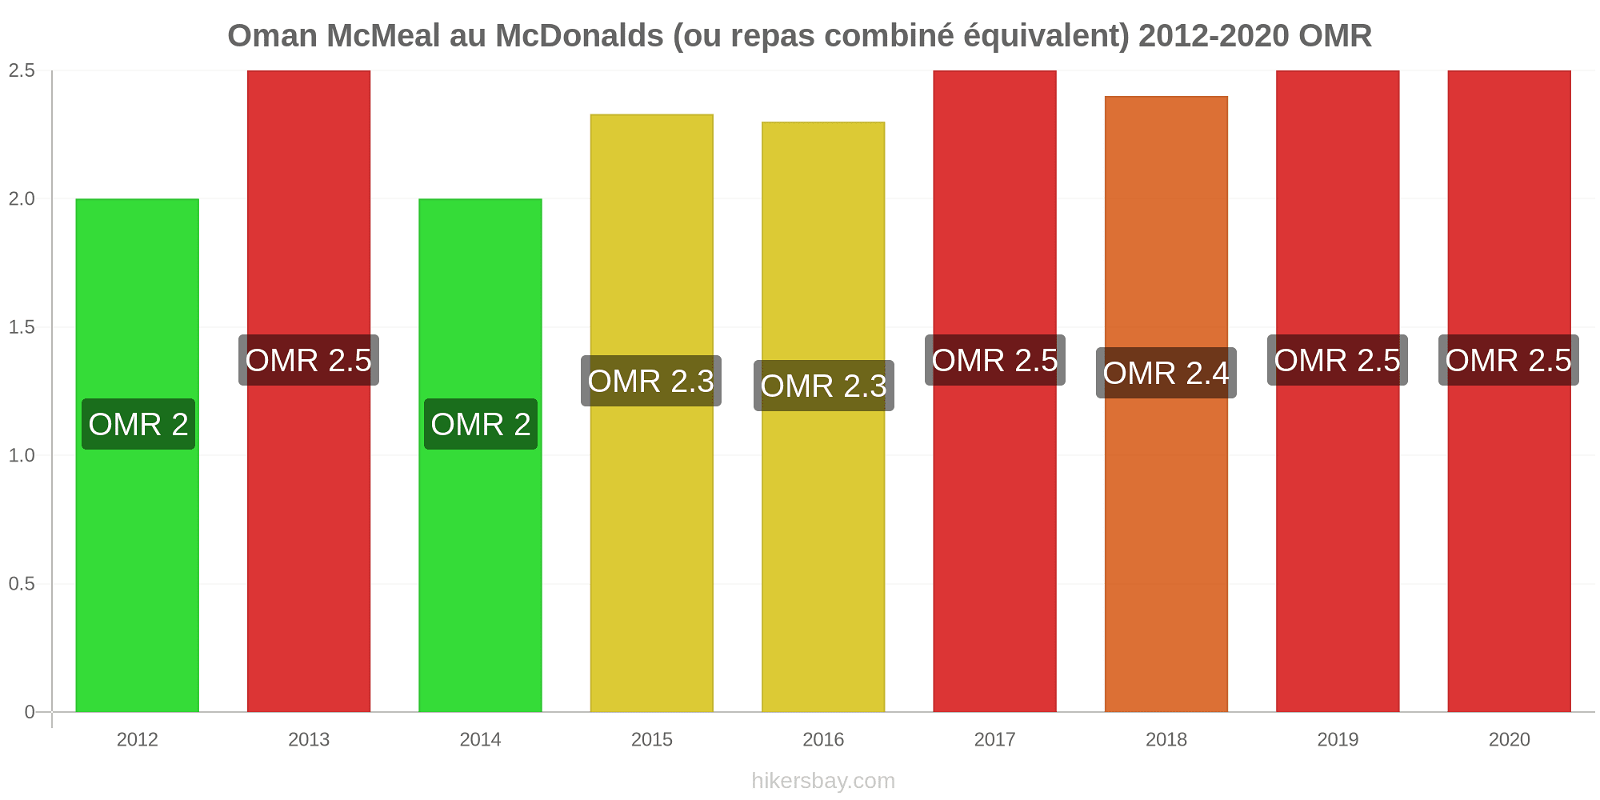 Oman changements de prix McMeal à McDonald ' s (ou Combo équivalent tourteau) hikersbay.com